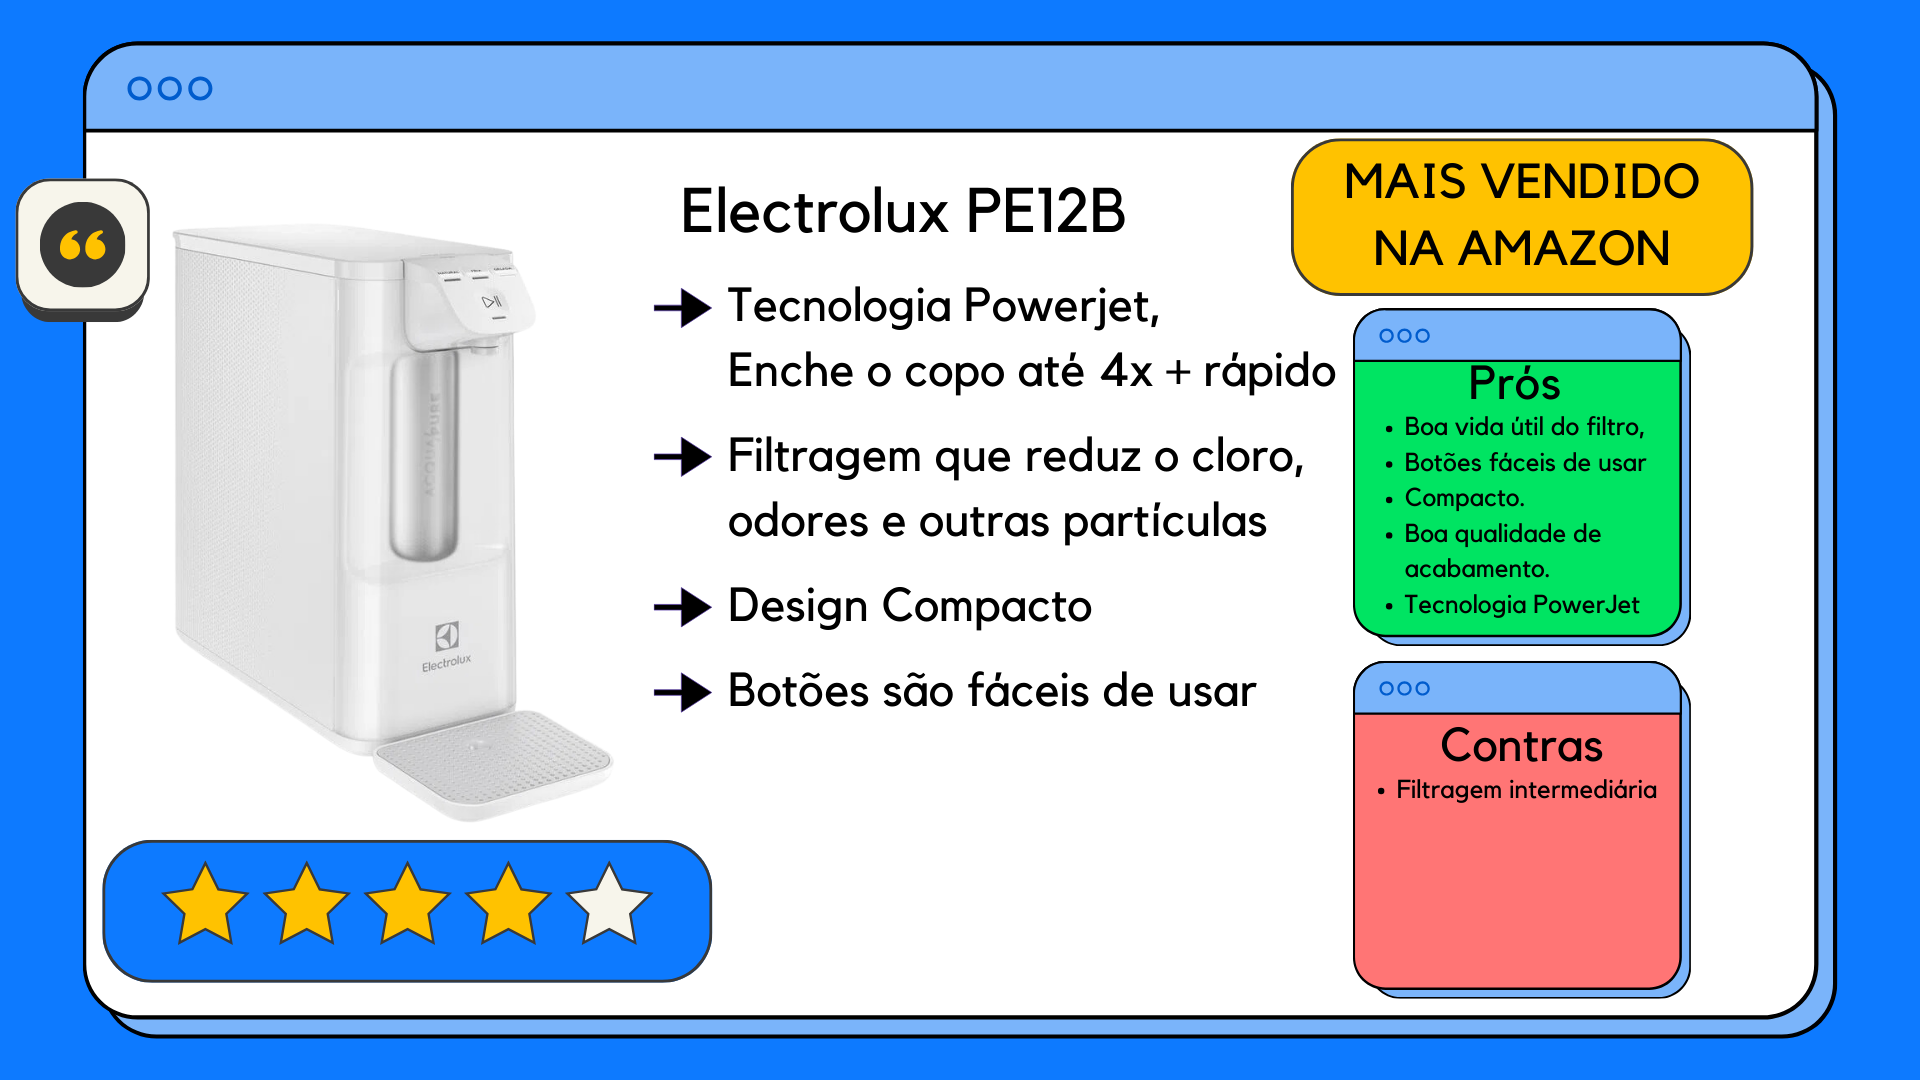 Review com os pros e contras do purificador de agua Electrolux PE12B